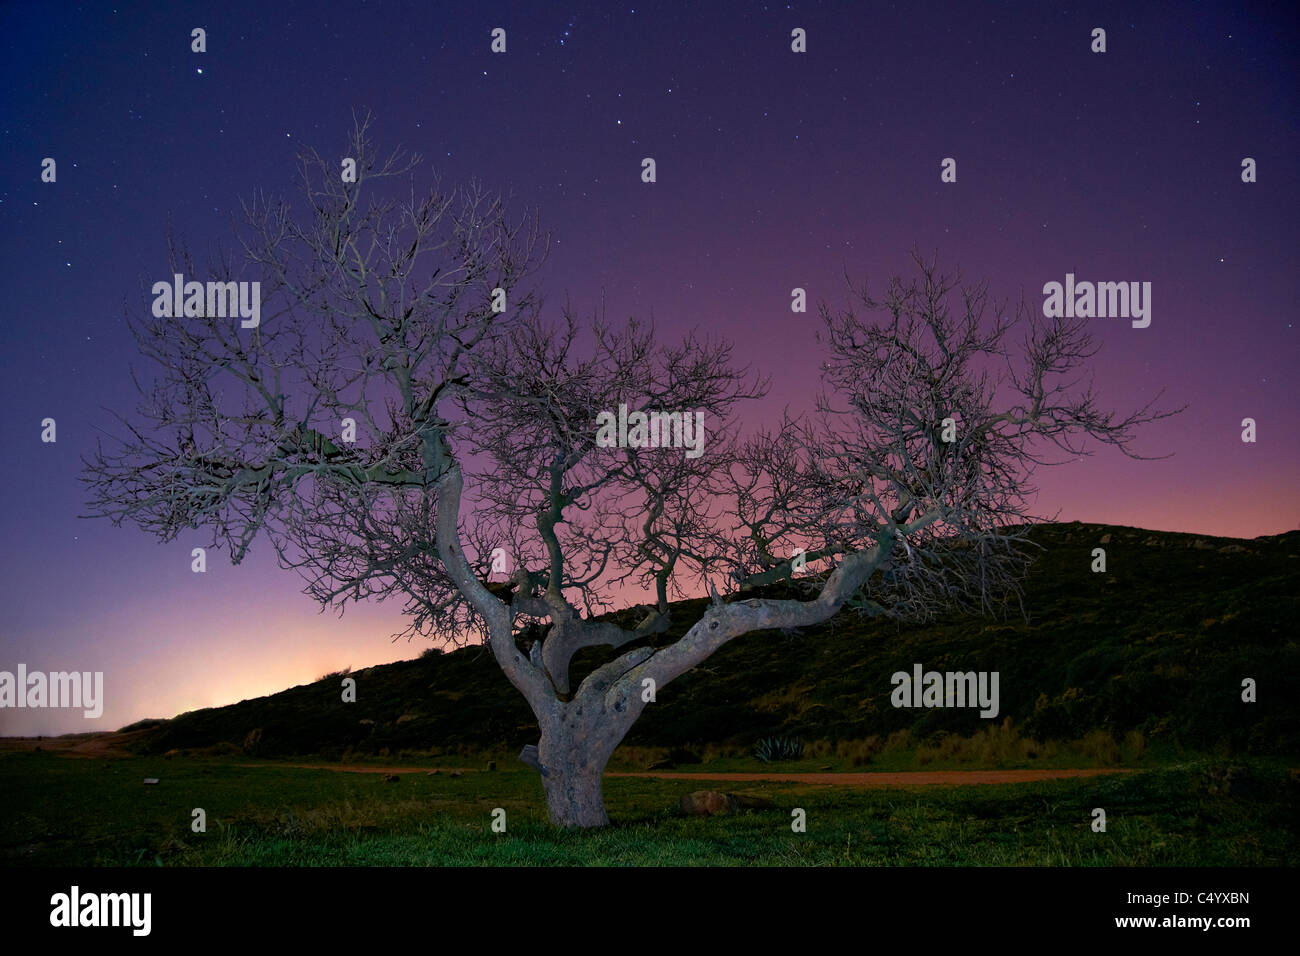 arbol cielo estrellado, moralische Nachtfotografie, Umgebung árbol fotografía nocturna Stockfoto